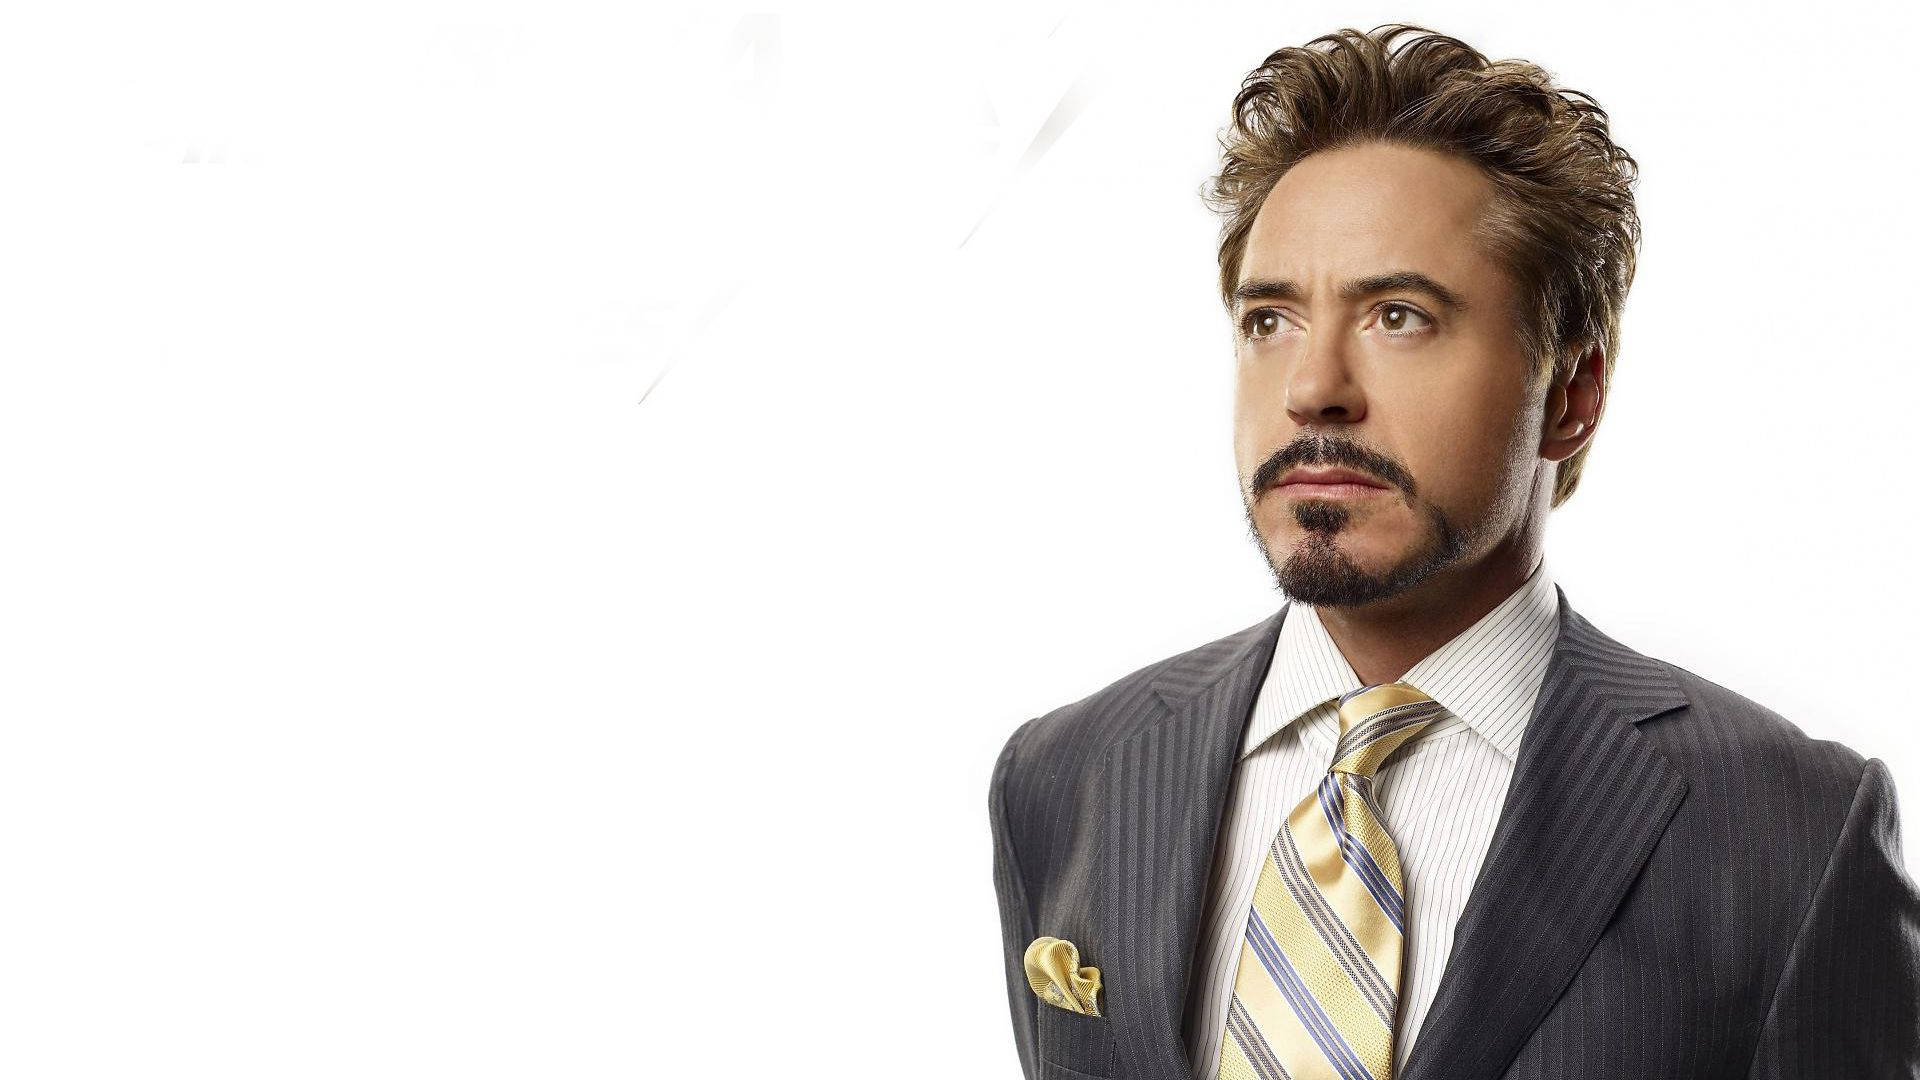 Gold Necktie Robert Downey Jr. Wallpaper